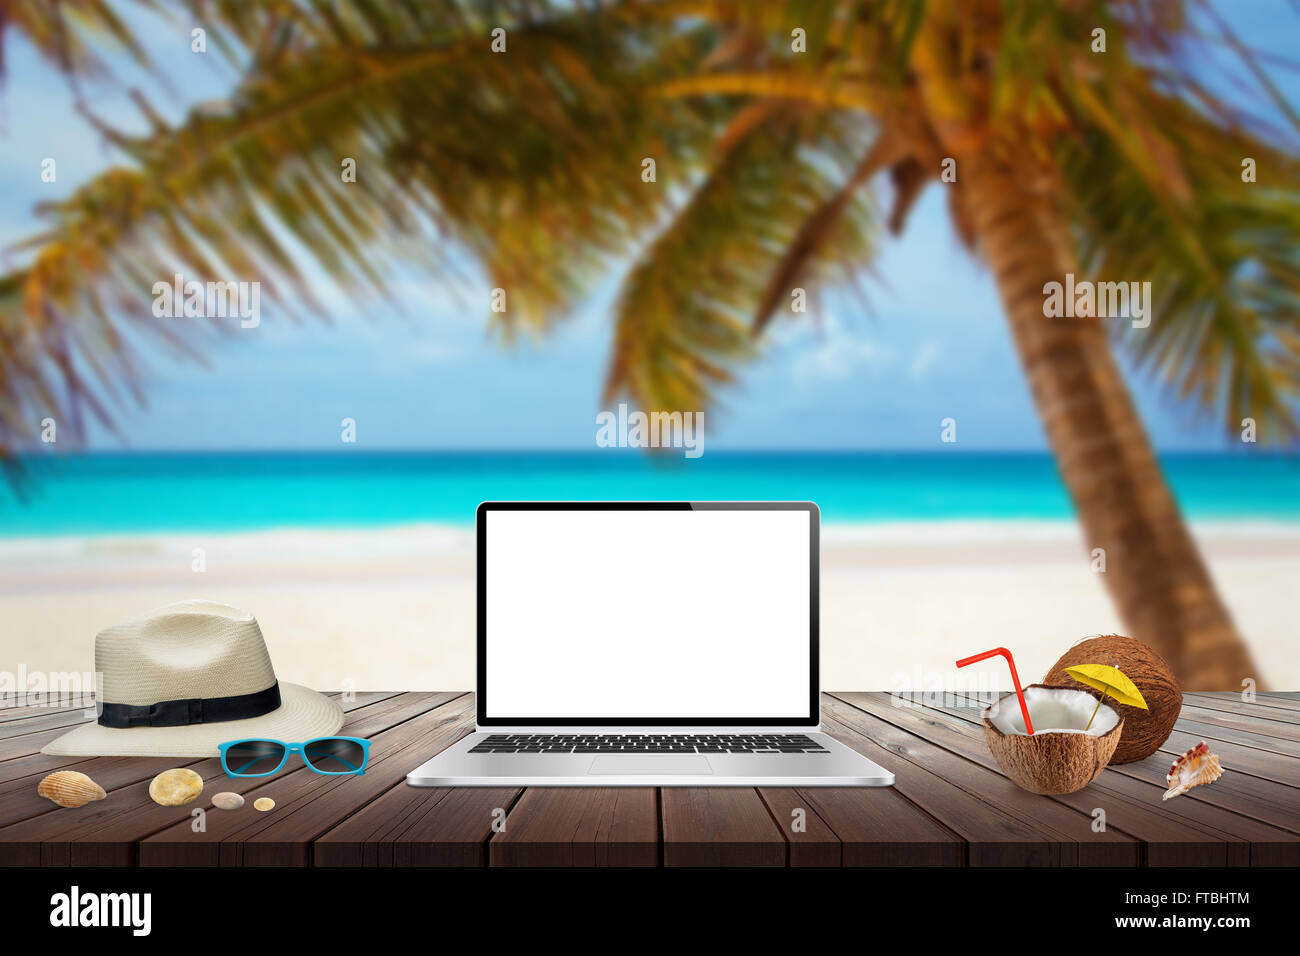 Visualizzazione isolata del computer portatile sul tavolo di legno per mockup. Noce di cocco, hat, conchiglie, pietre, gli occhiali da sole sul tavolo. Spiaggia, mare, palm Foto Stock